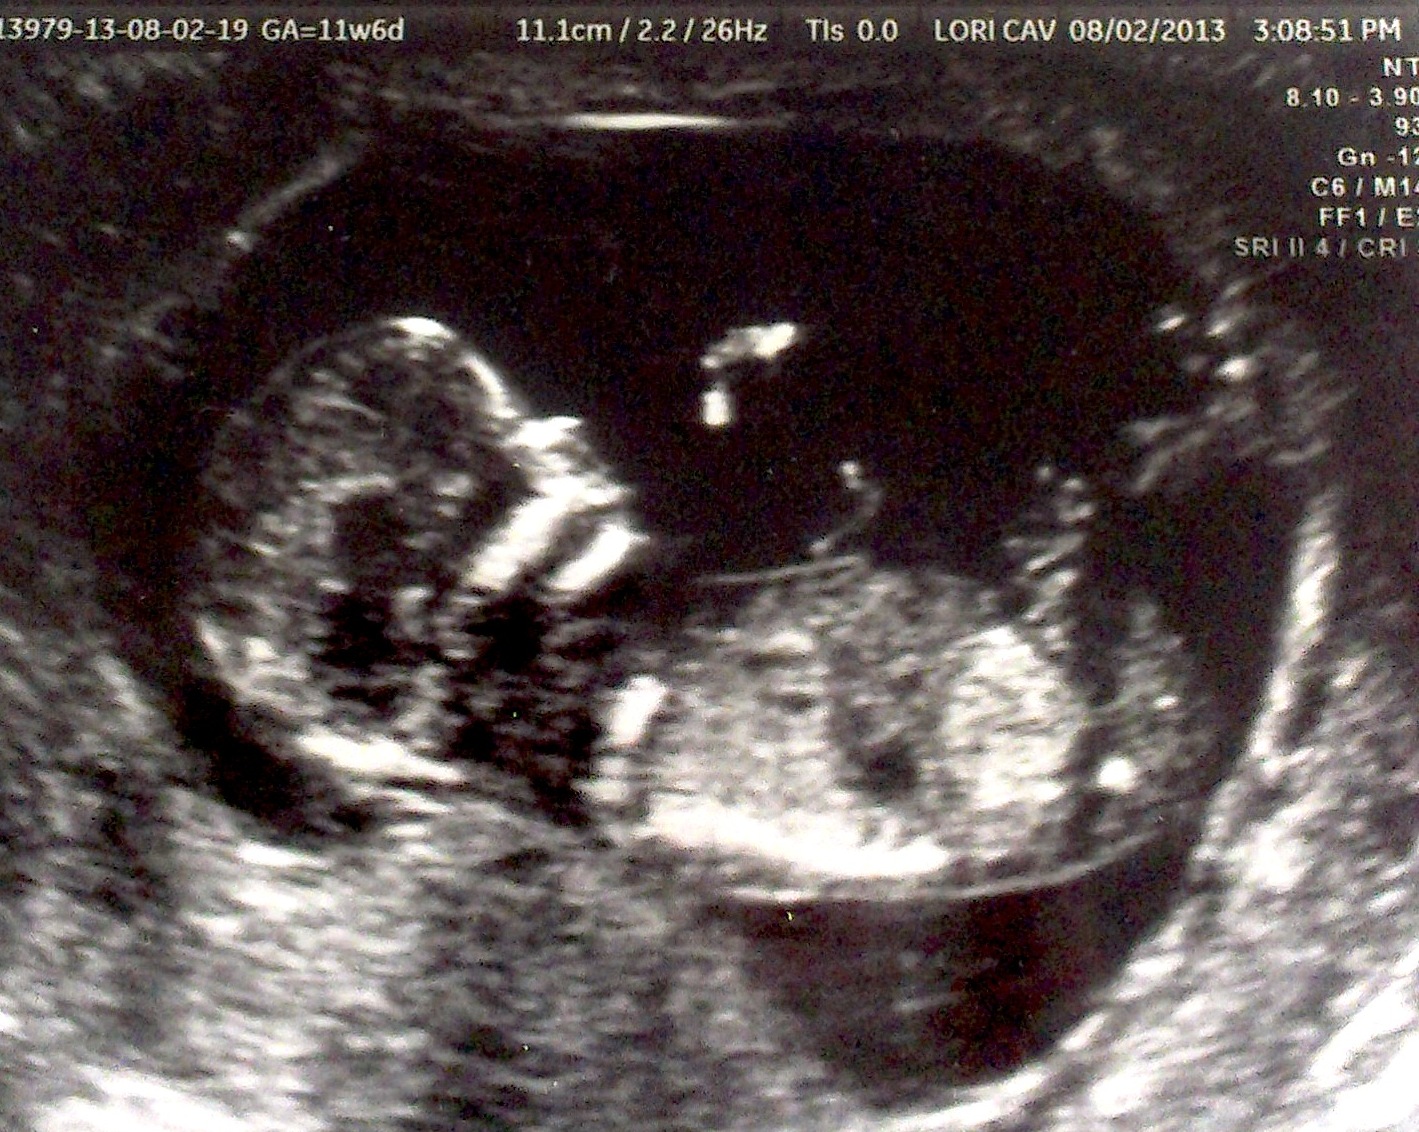 3 недели беременности фото плода как выглядит